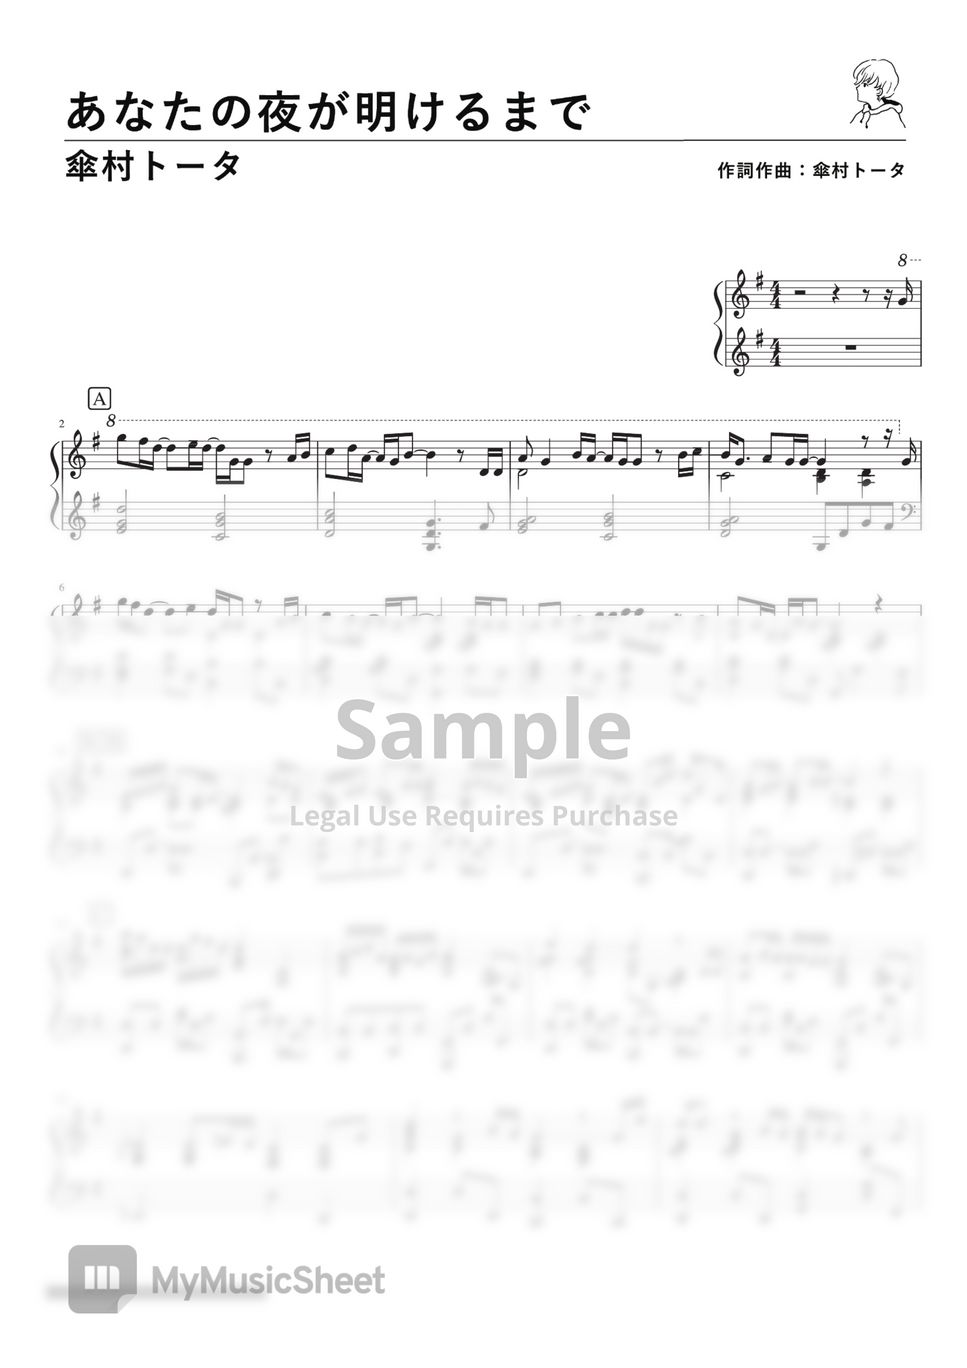 Tota Kasamura - Anata no Yoru ga Akerumade (PianoSolo) by Fukane